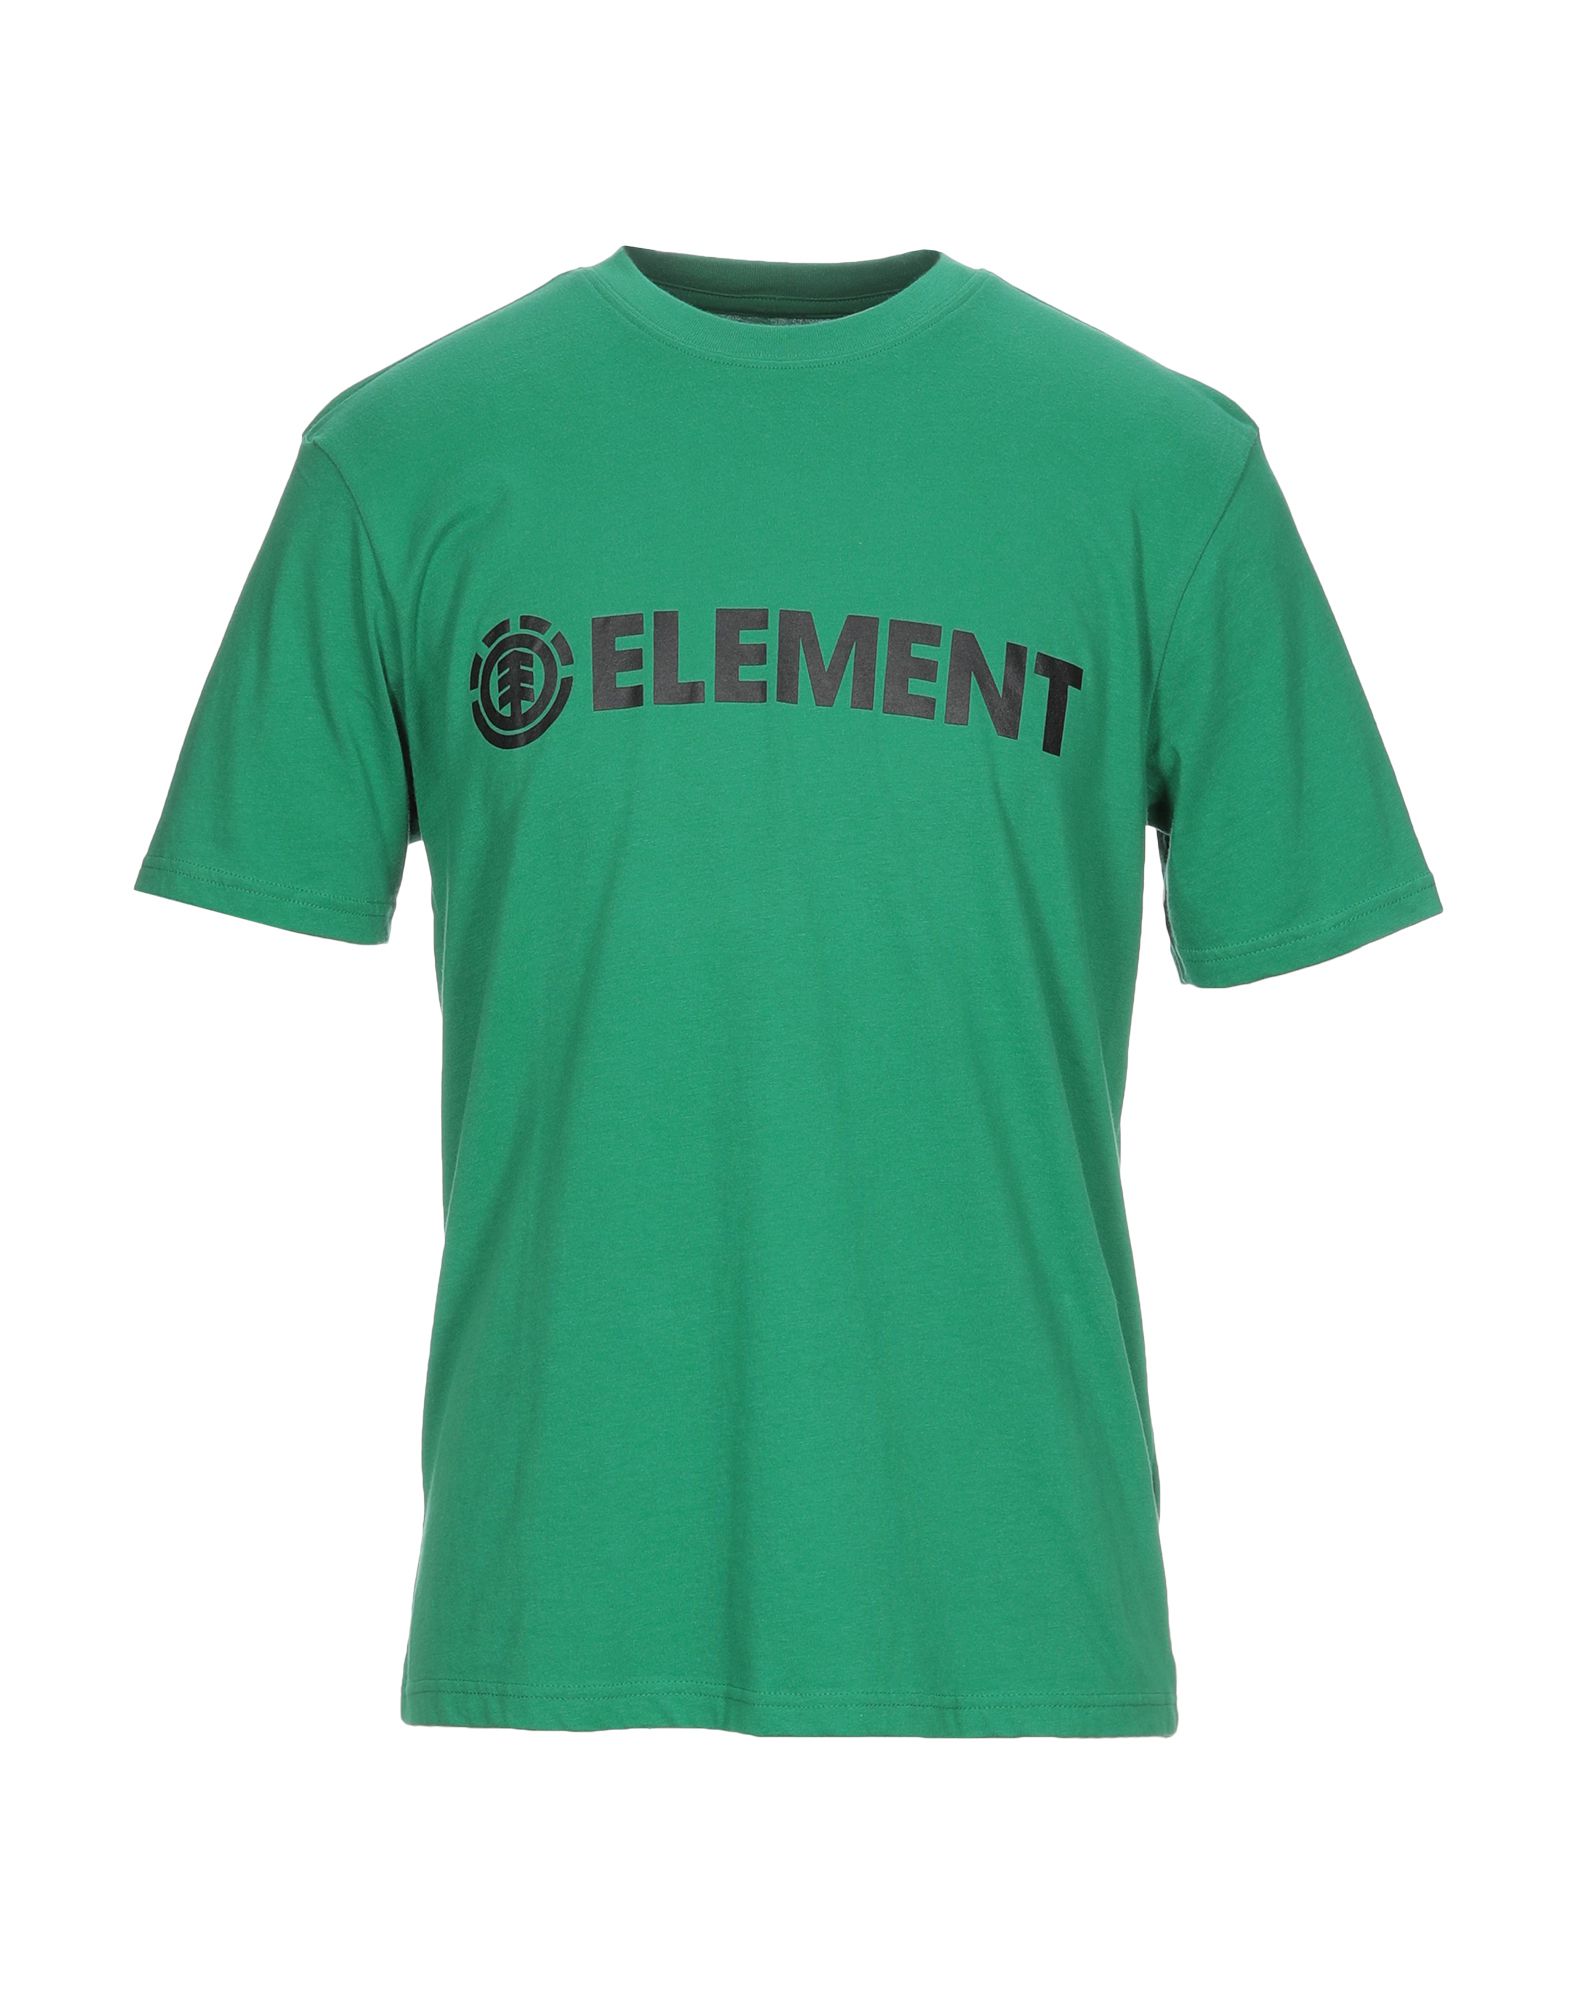 ELEMENT T-shirts Herren Grün von ELEMENT